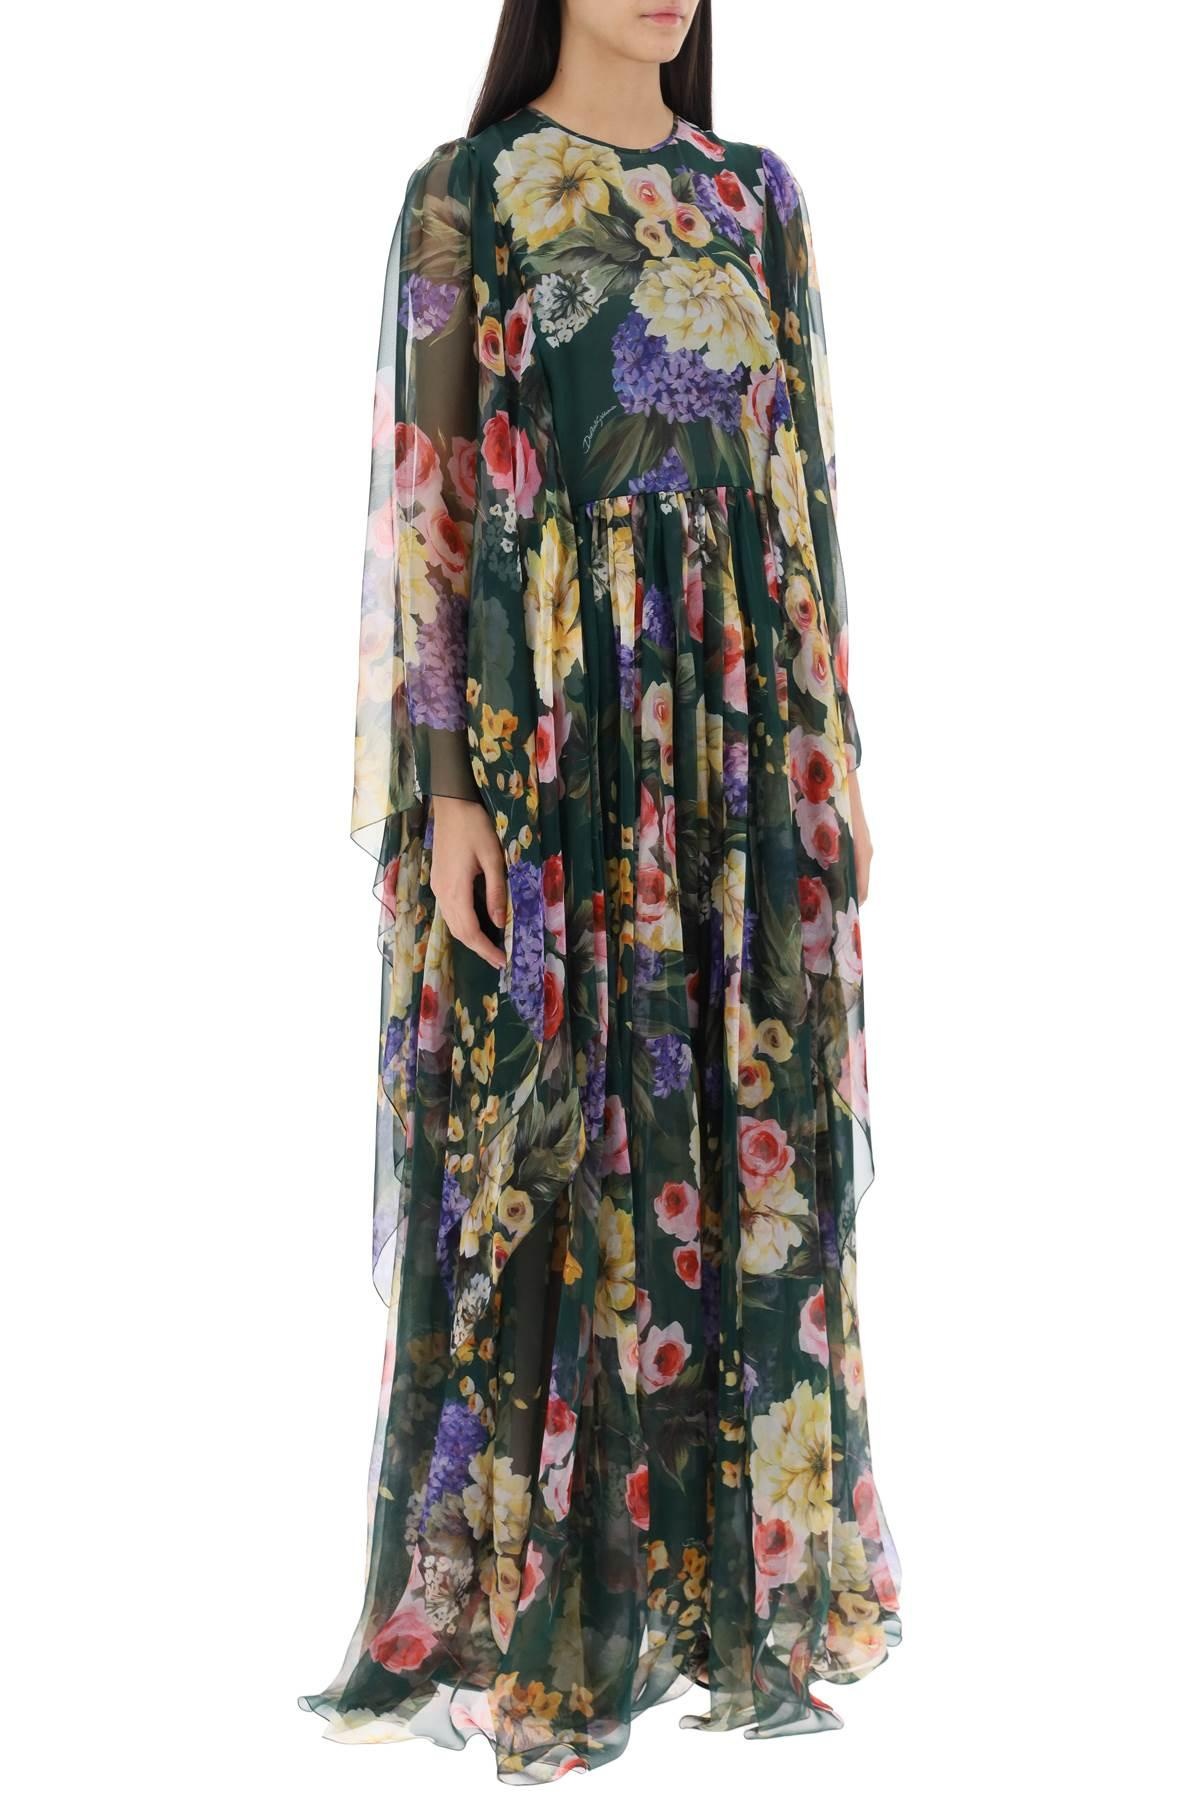 Dolce & Gabbana Chiffon Maxi Dress With Garden Print - 3